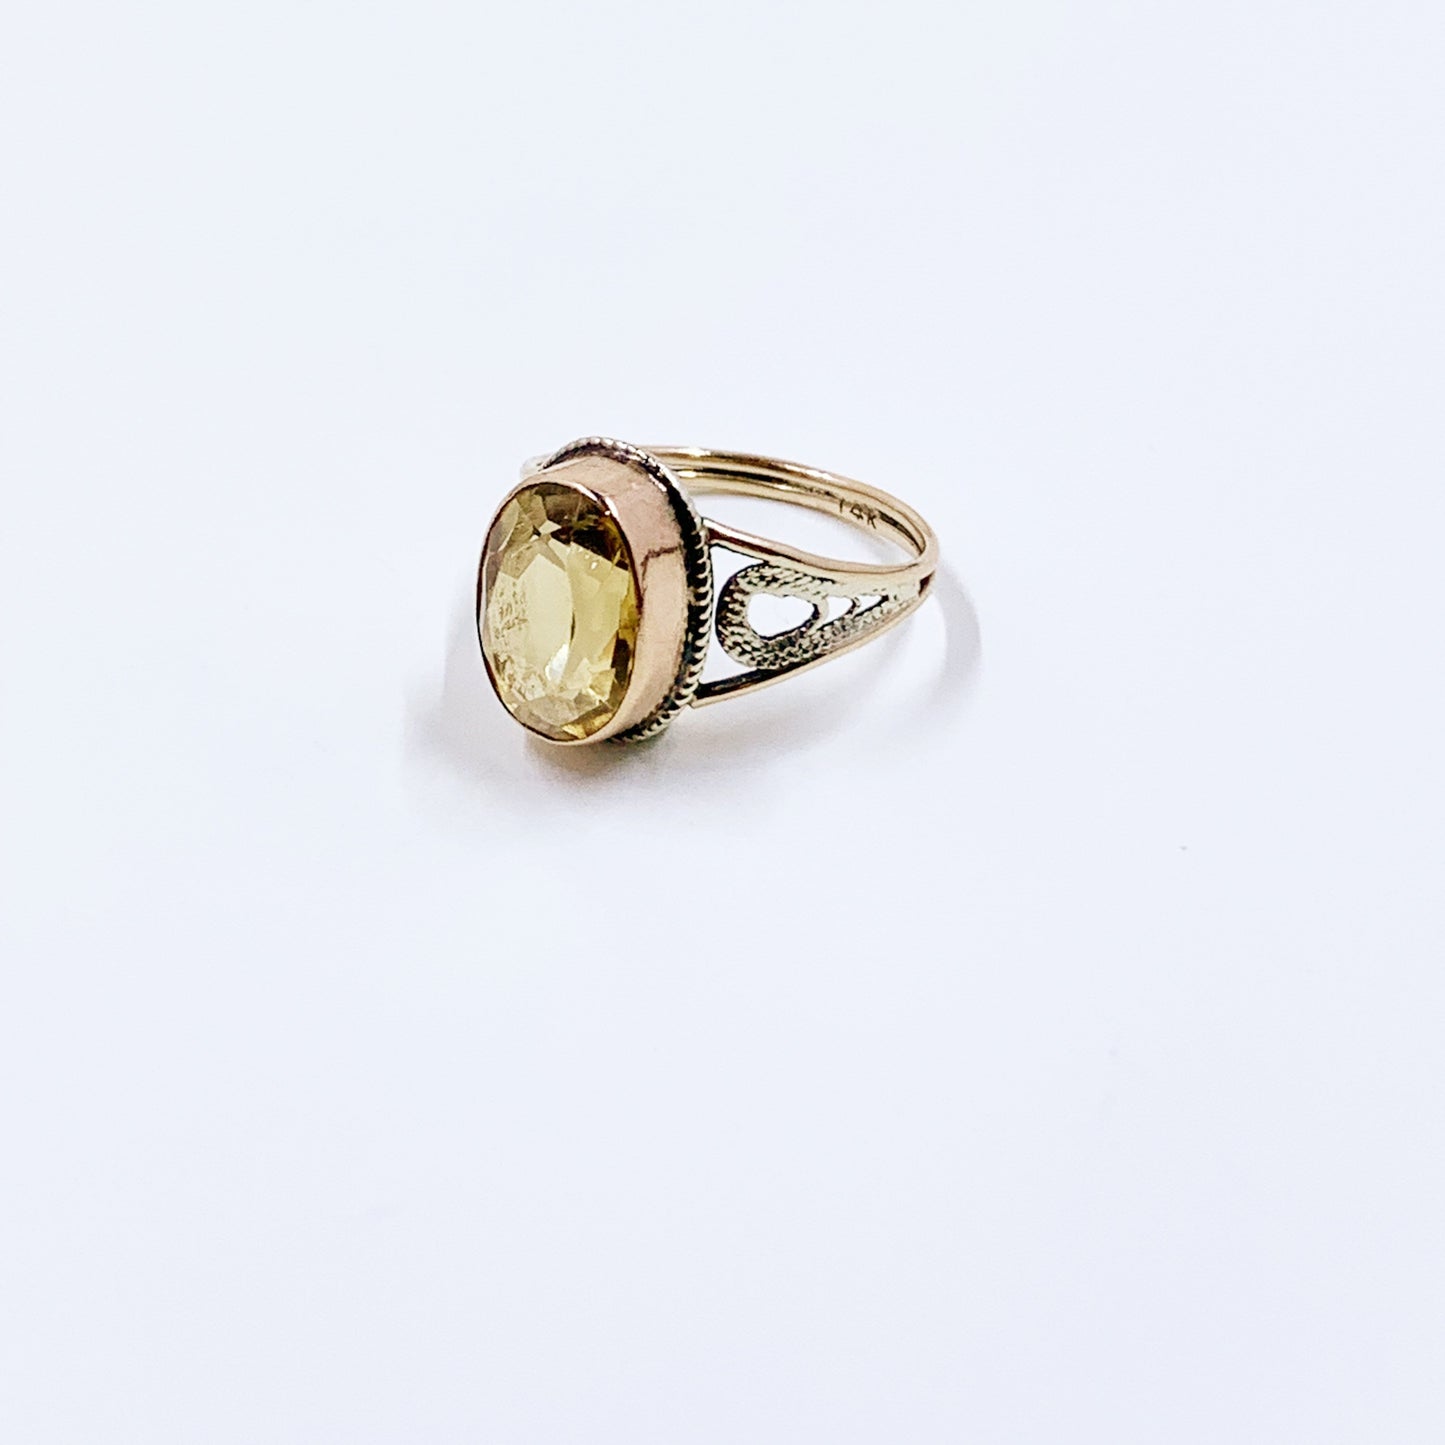 Vintage 14k Gold Filigree Yellow Stone Ring | Size 4.75 Ring